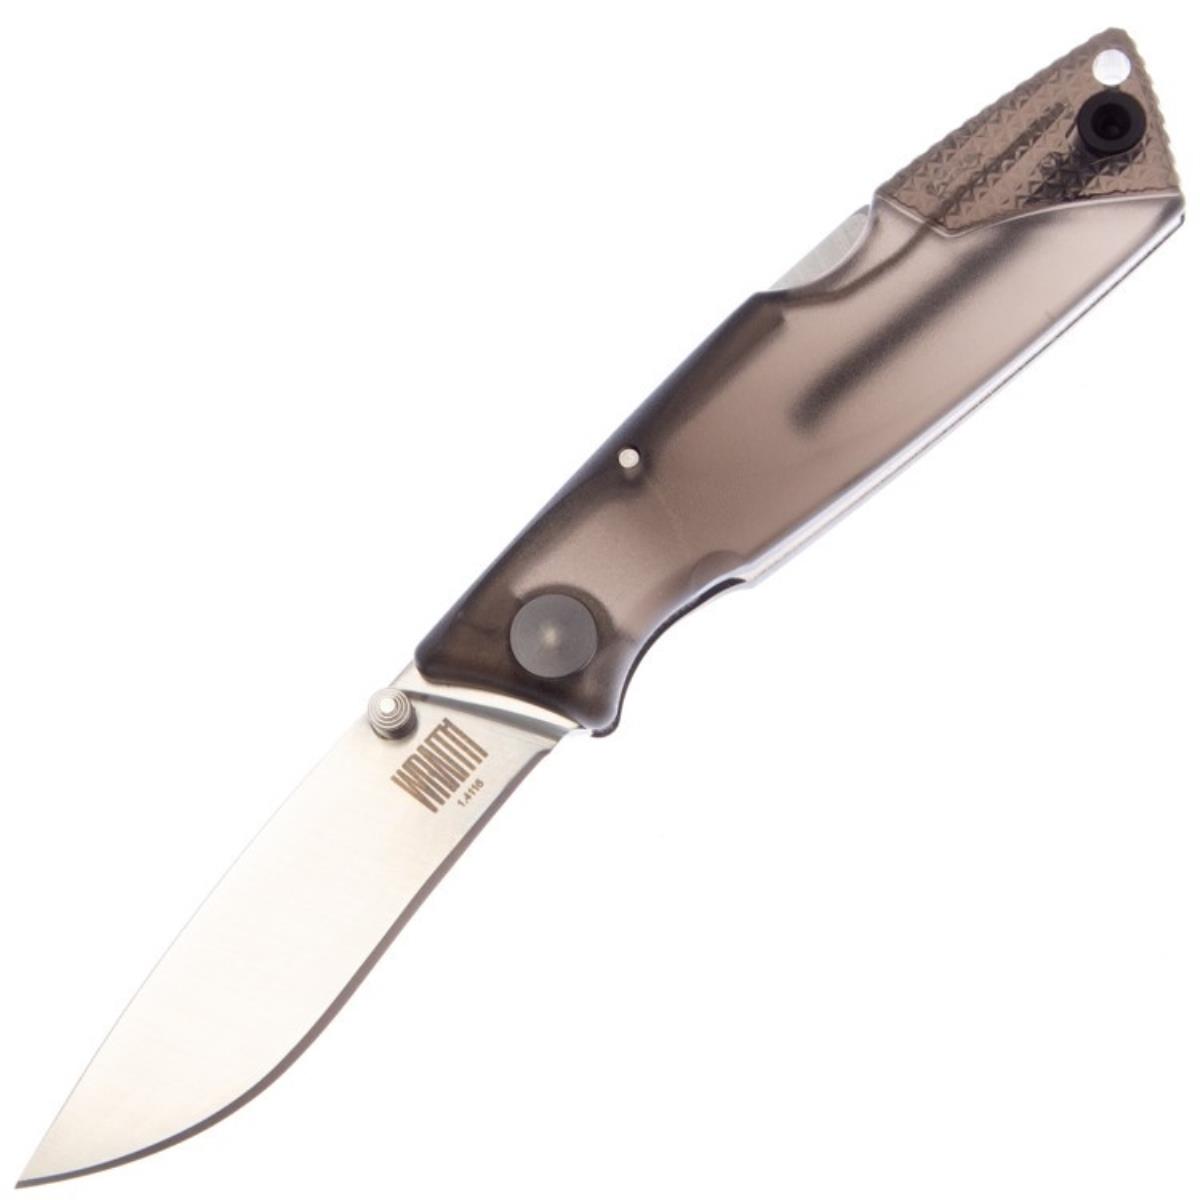 Нож Wraith Ice Series Smoke складн.,серо-коричневая полимерная рукоять, клинок AUS8 (8798SM)  ONTARIO нож складной ontario сталь 7cr17mov рукоять термопластик grn камуфляж